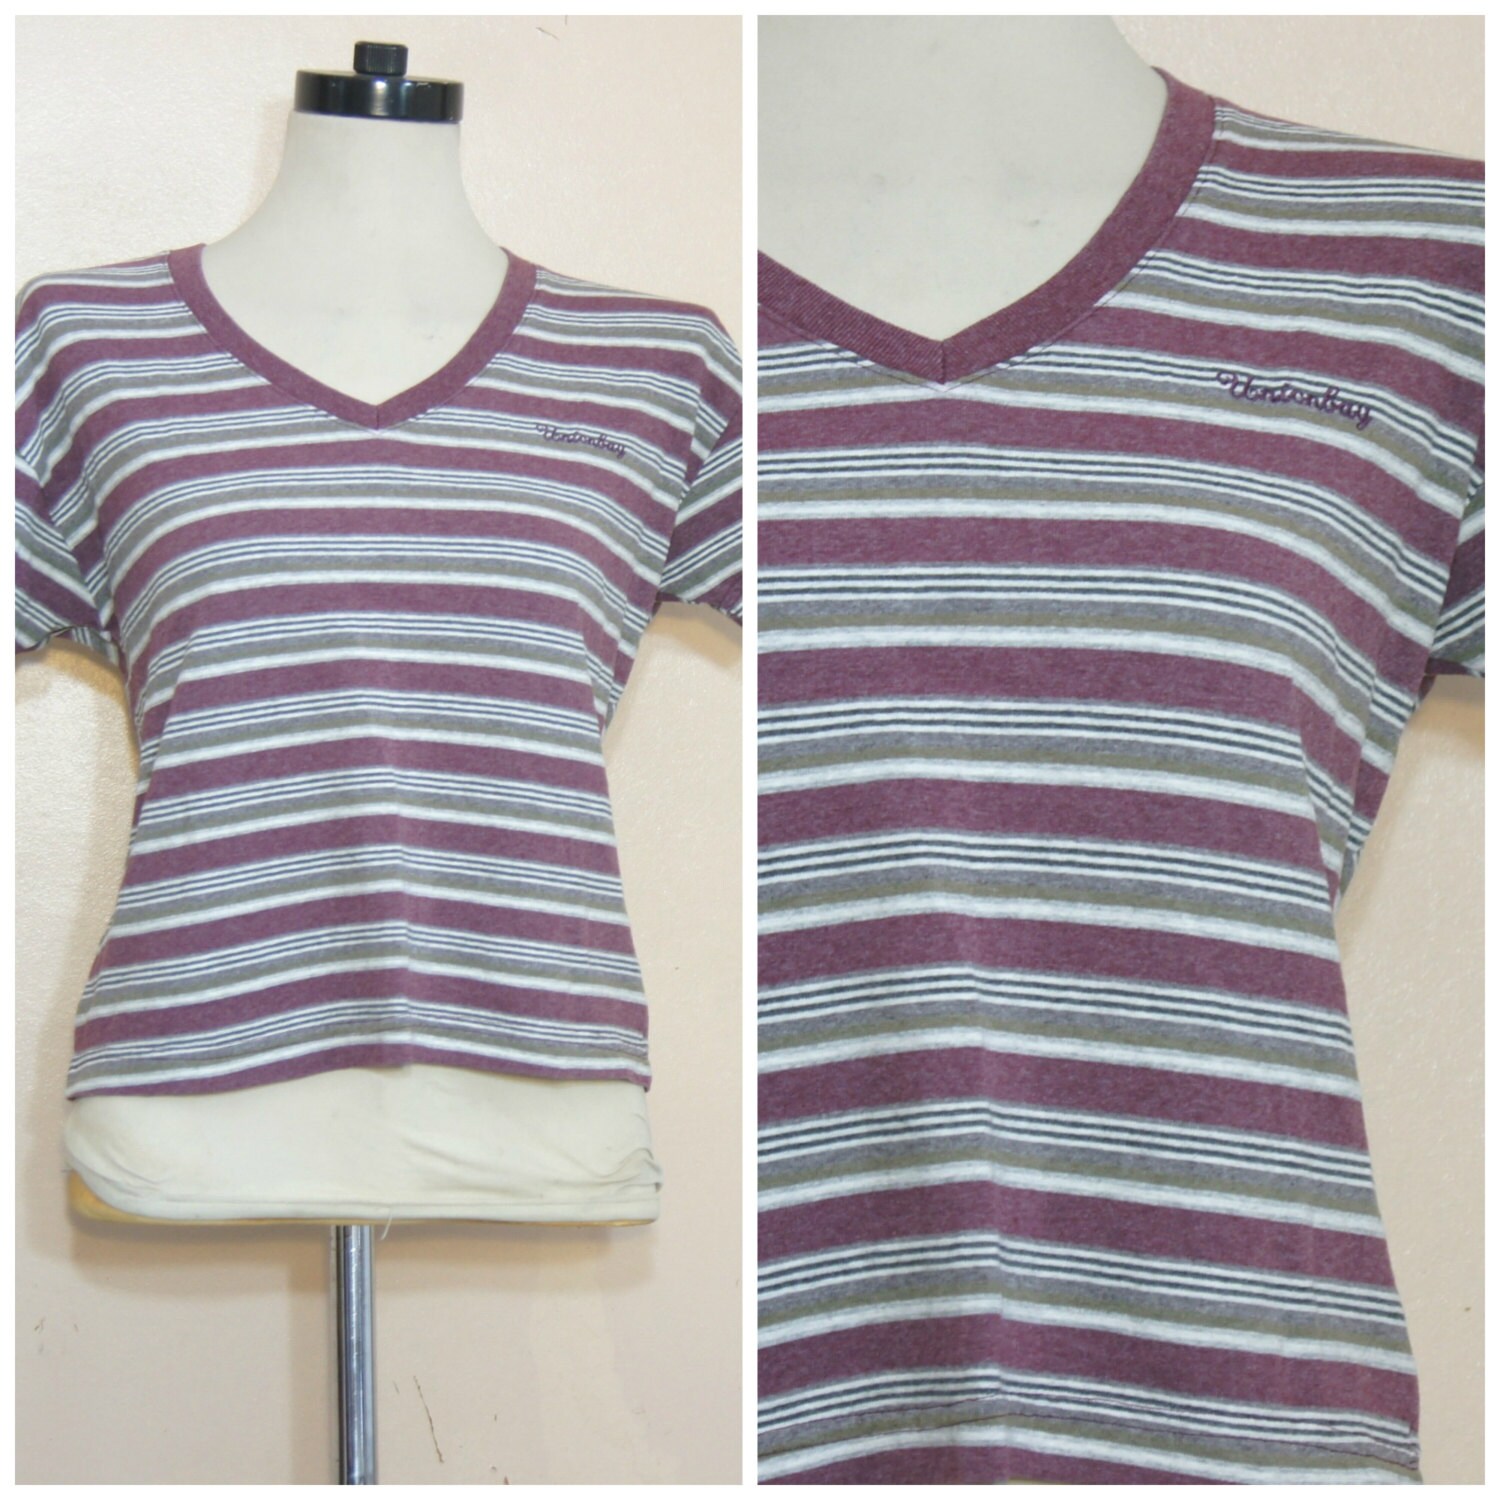 90s Grunge Stripe Shirt Union Bay Medium Large by WhiteWaveVintage